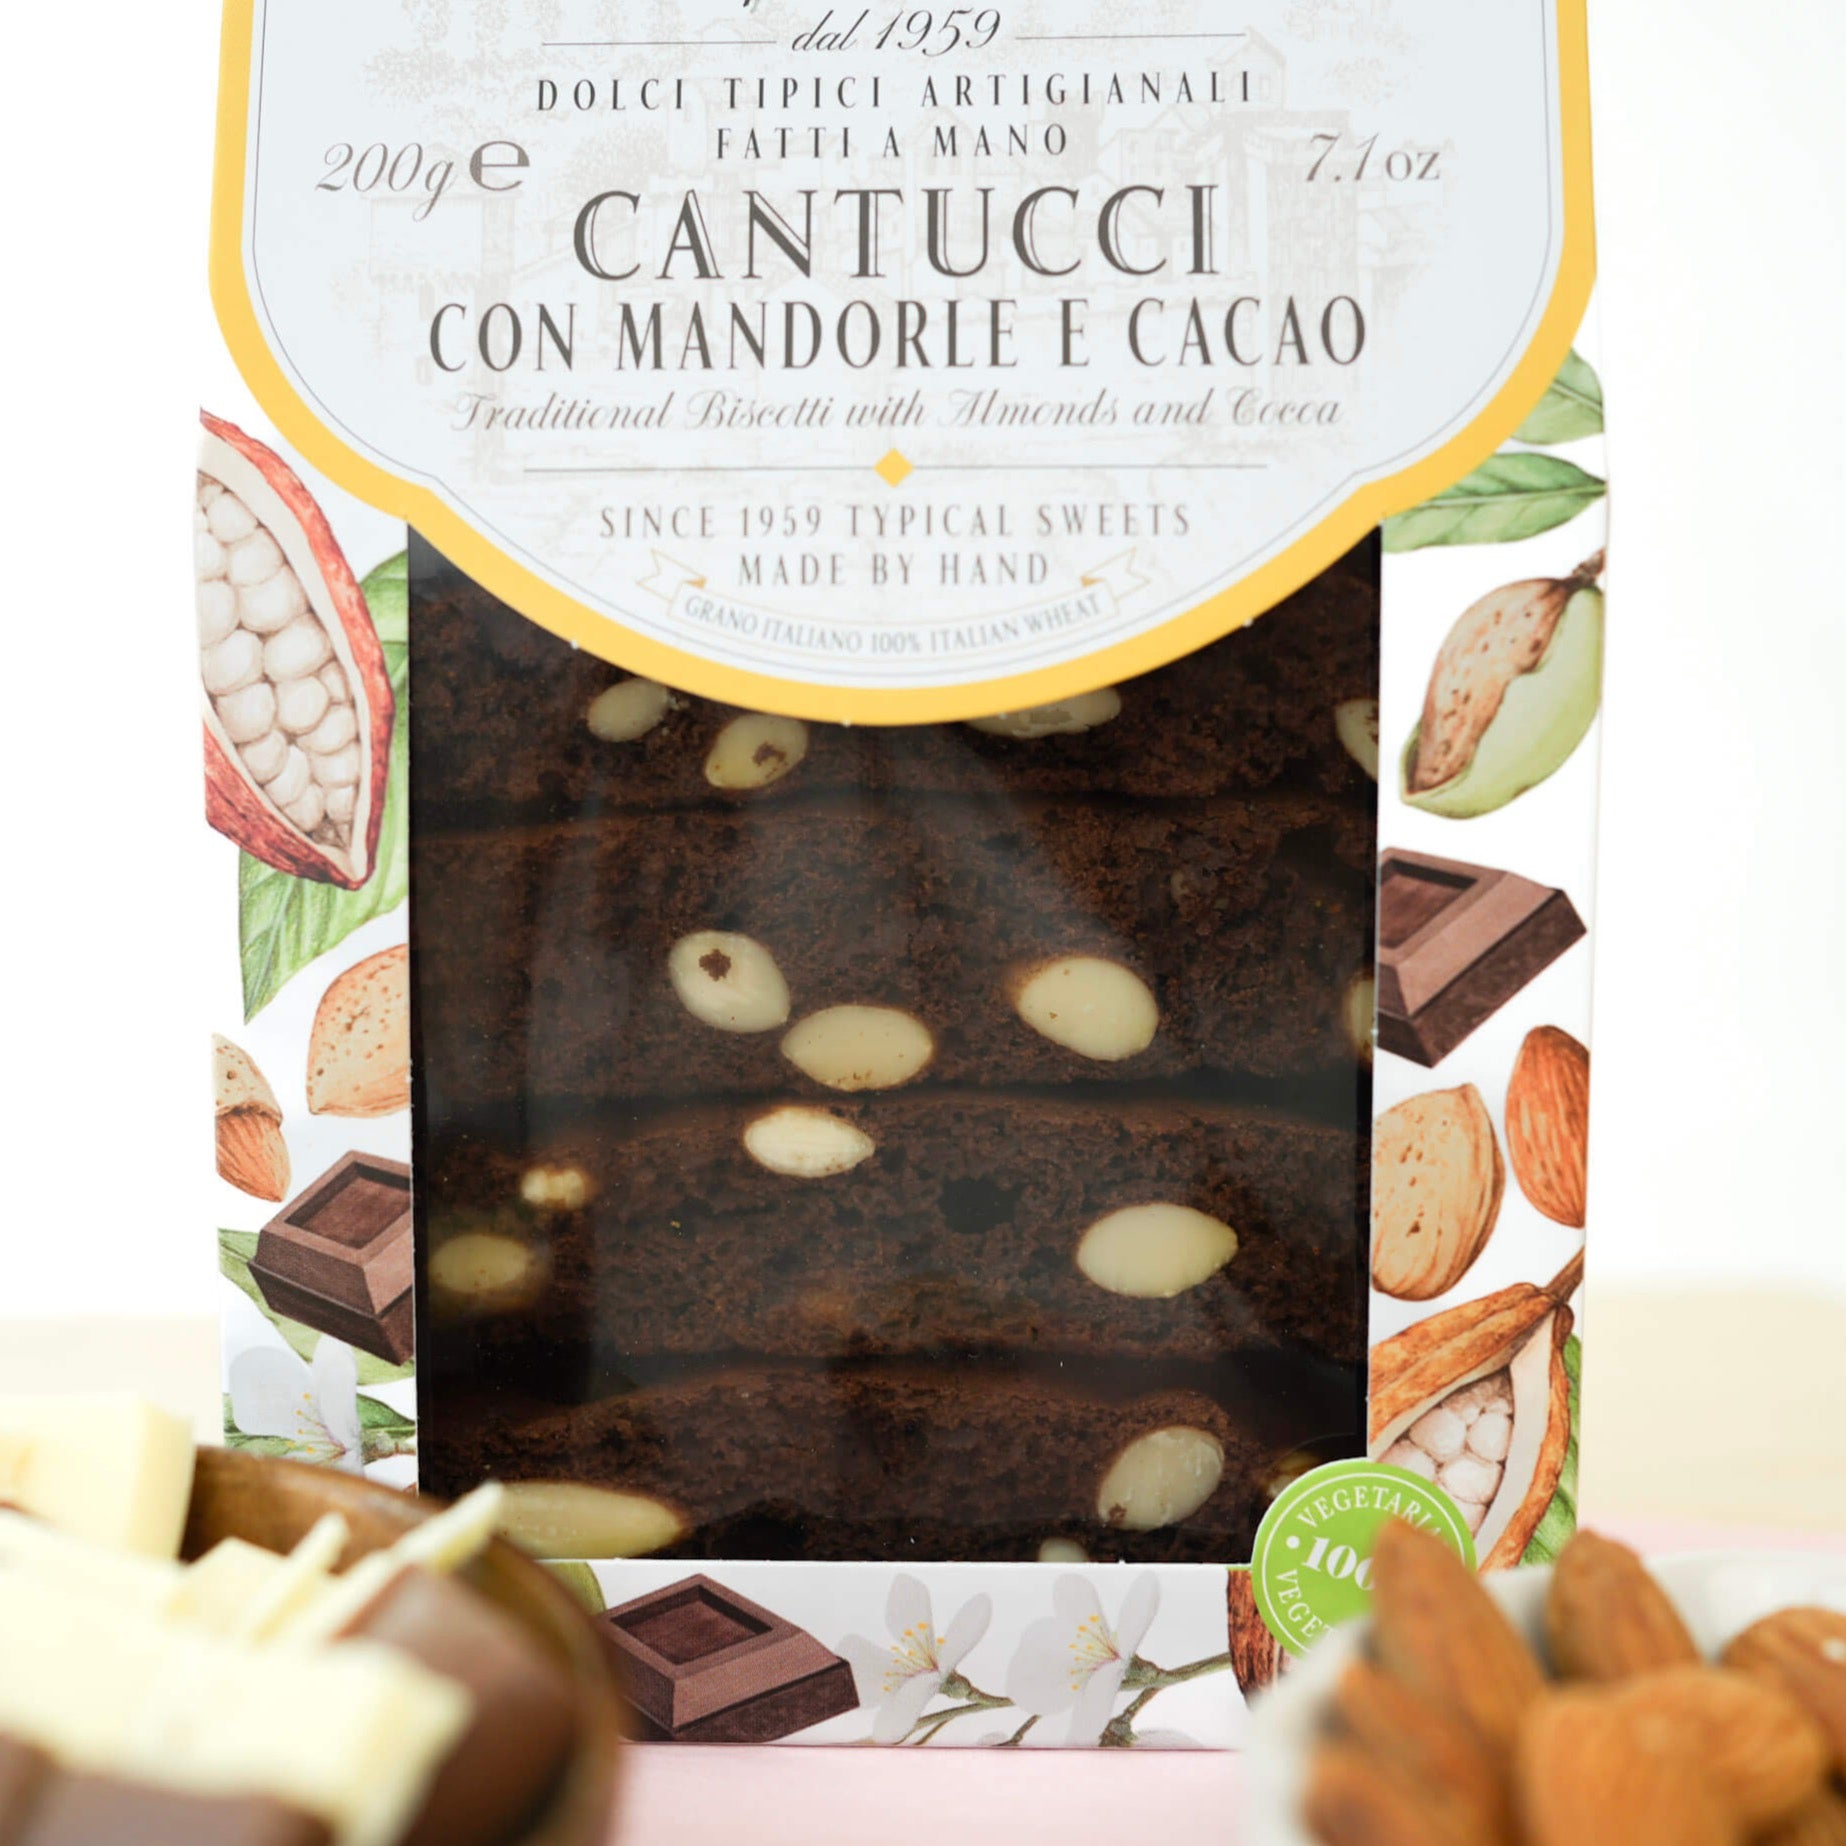 Cantuccini oder auch Cantucci sind italienische Kekse, welche aufgrund ihrer knusprigen und knackigen Konsistenz geschätzt werden. Das toskanische Mandelgebäck wird im Heimatland entweder trocken vernascht oder in Kaffee oder Wein getunkt. Jetzt Cantuccini kaufen!